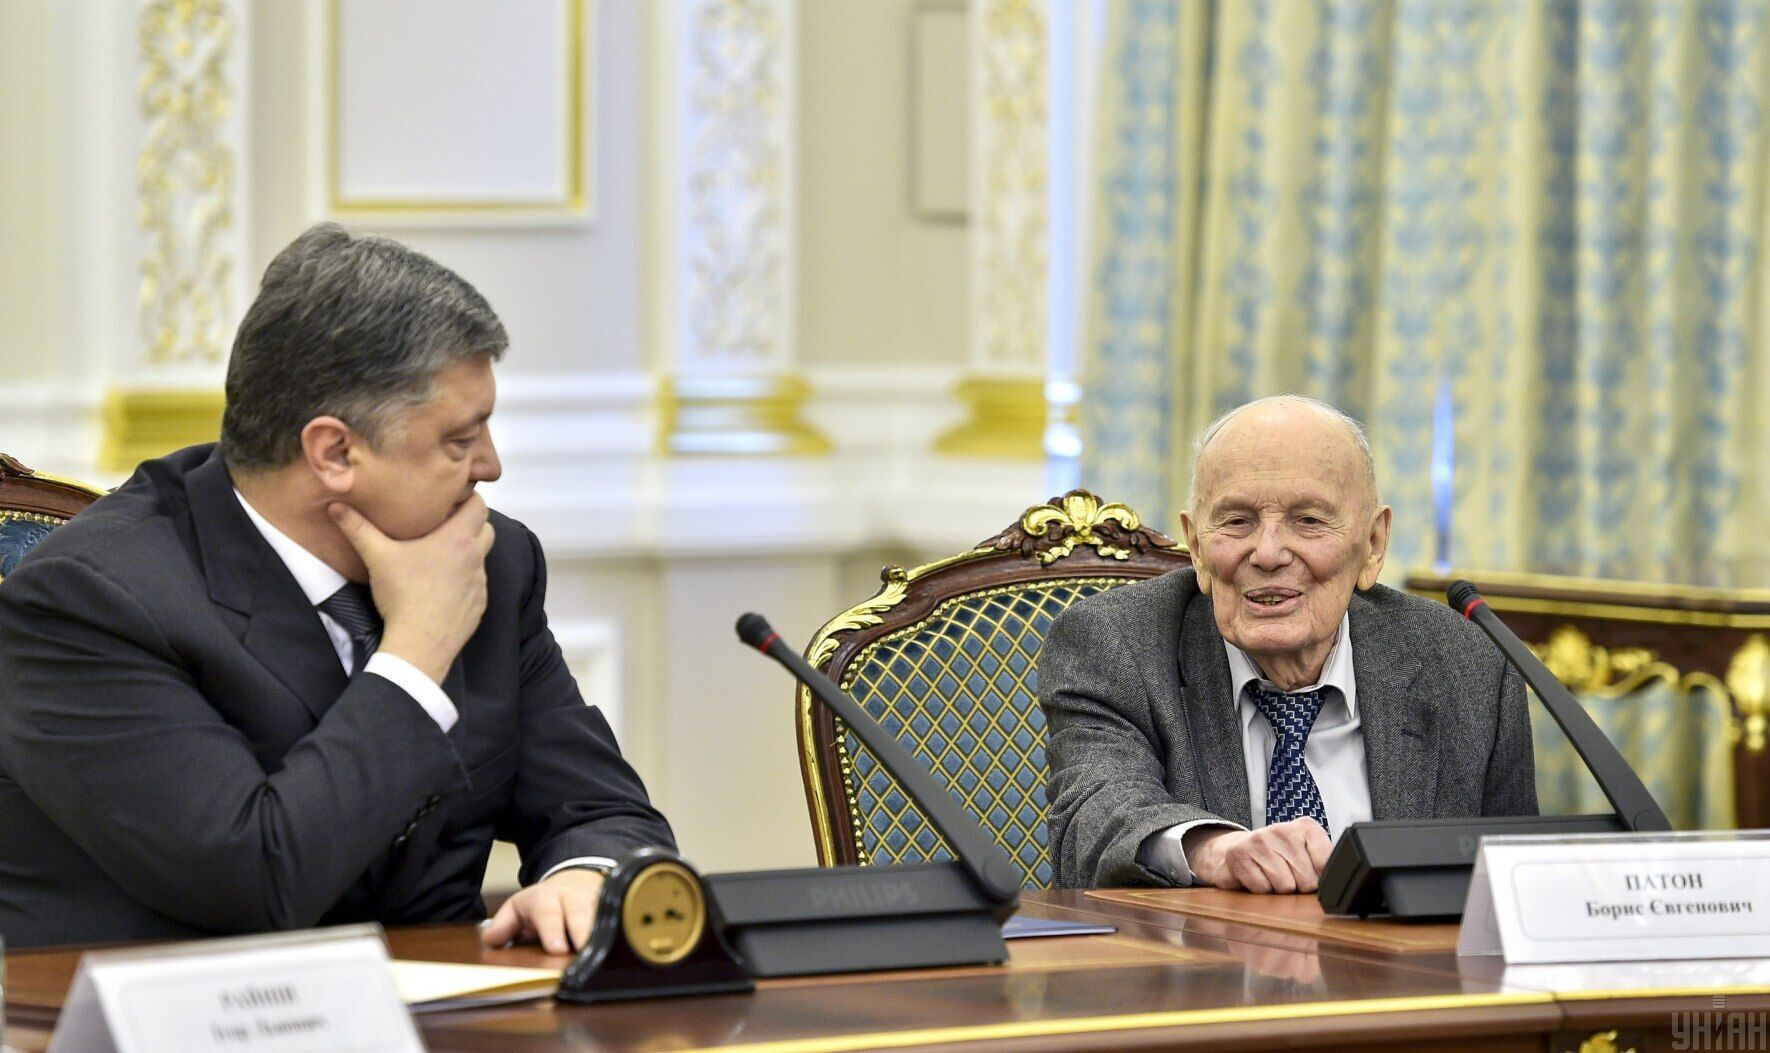 Пятый президент Украины Петр Порошенко и президент НАН Украины Борис Патон, 7 апреля 2017 года